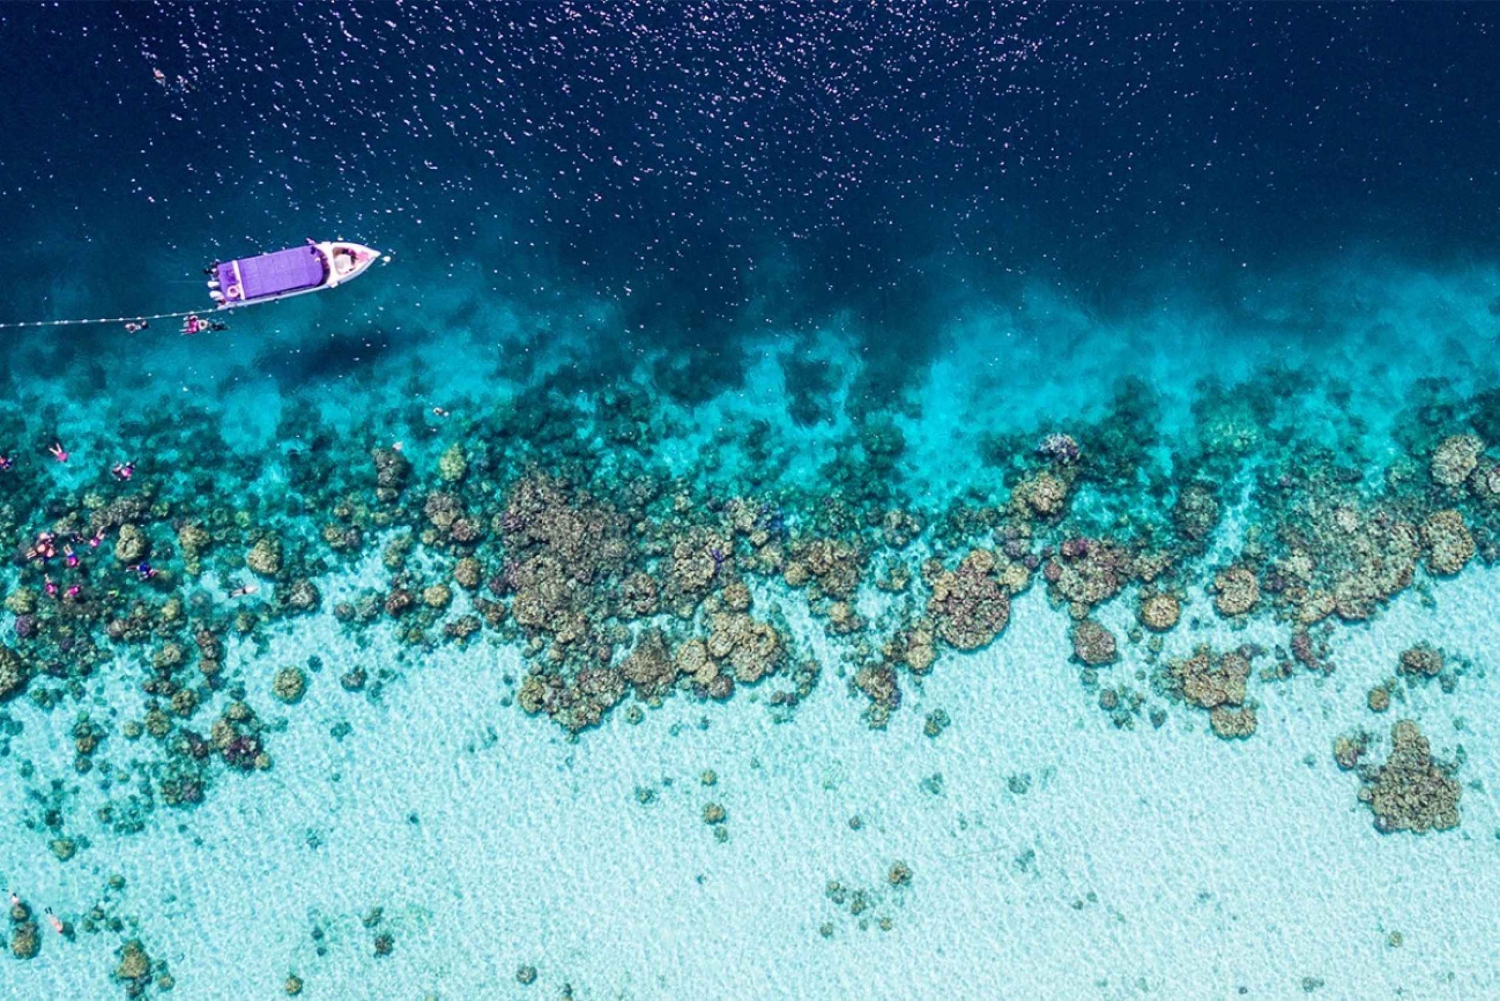 Surin-eilanden: dagtrip zwemmen en snorkelen